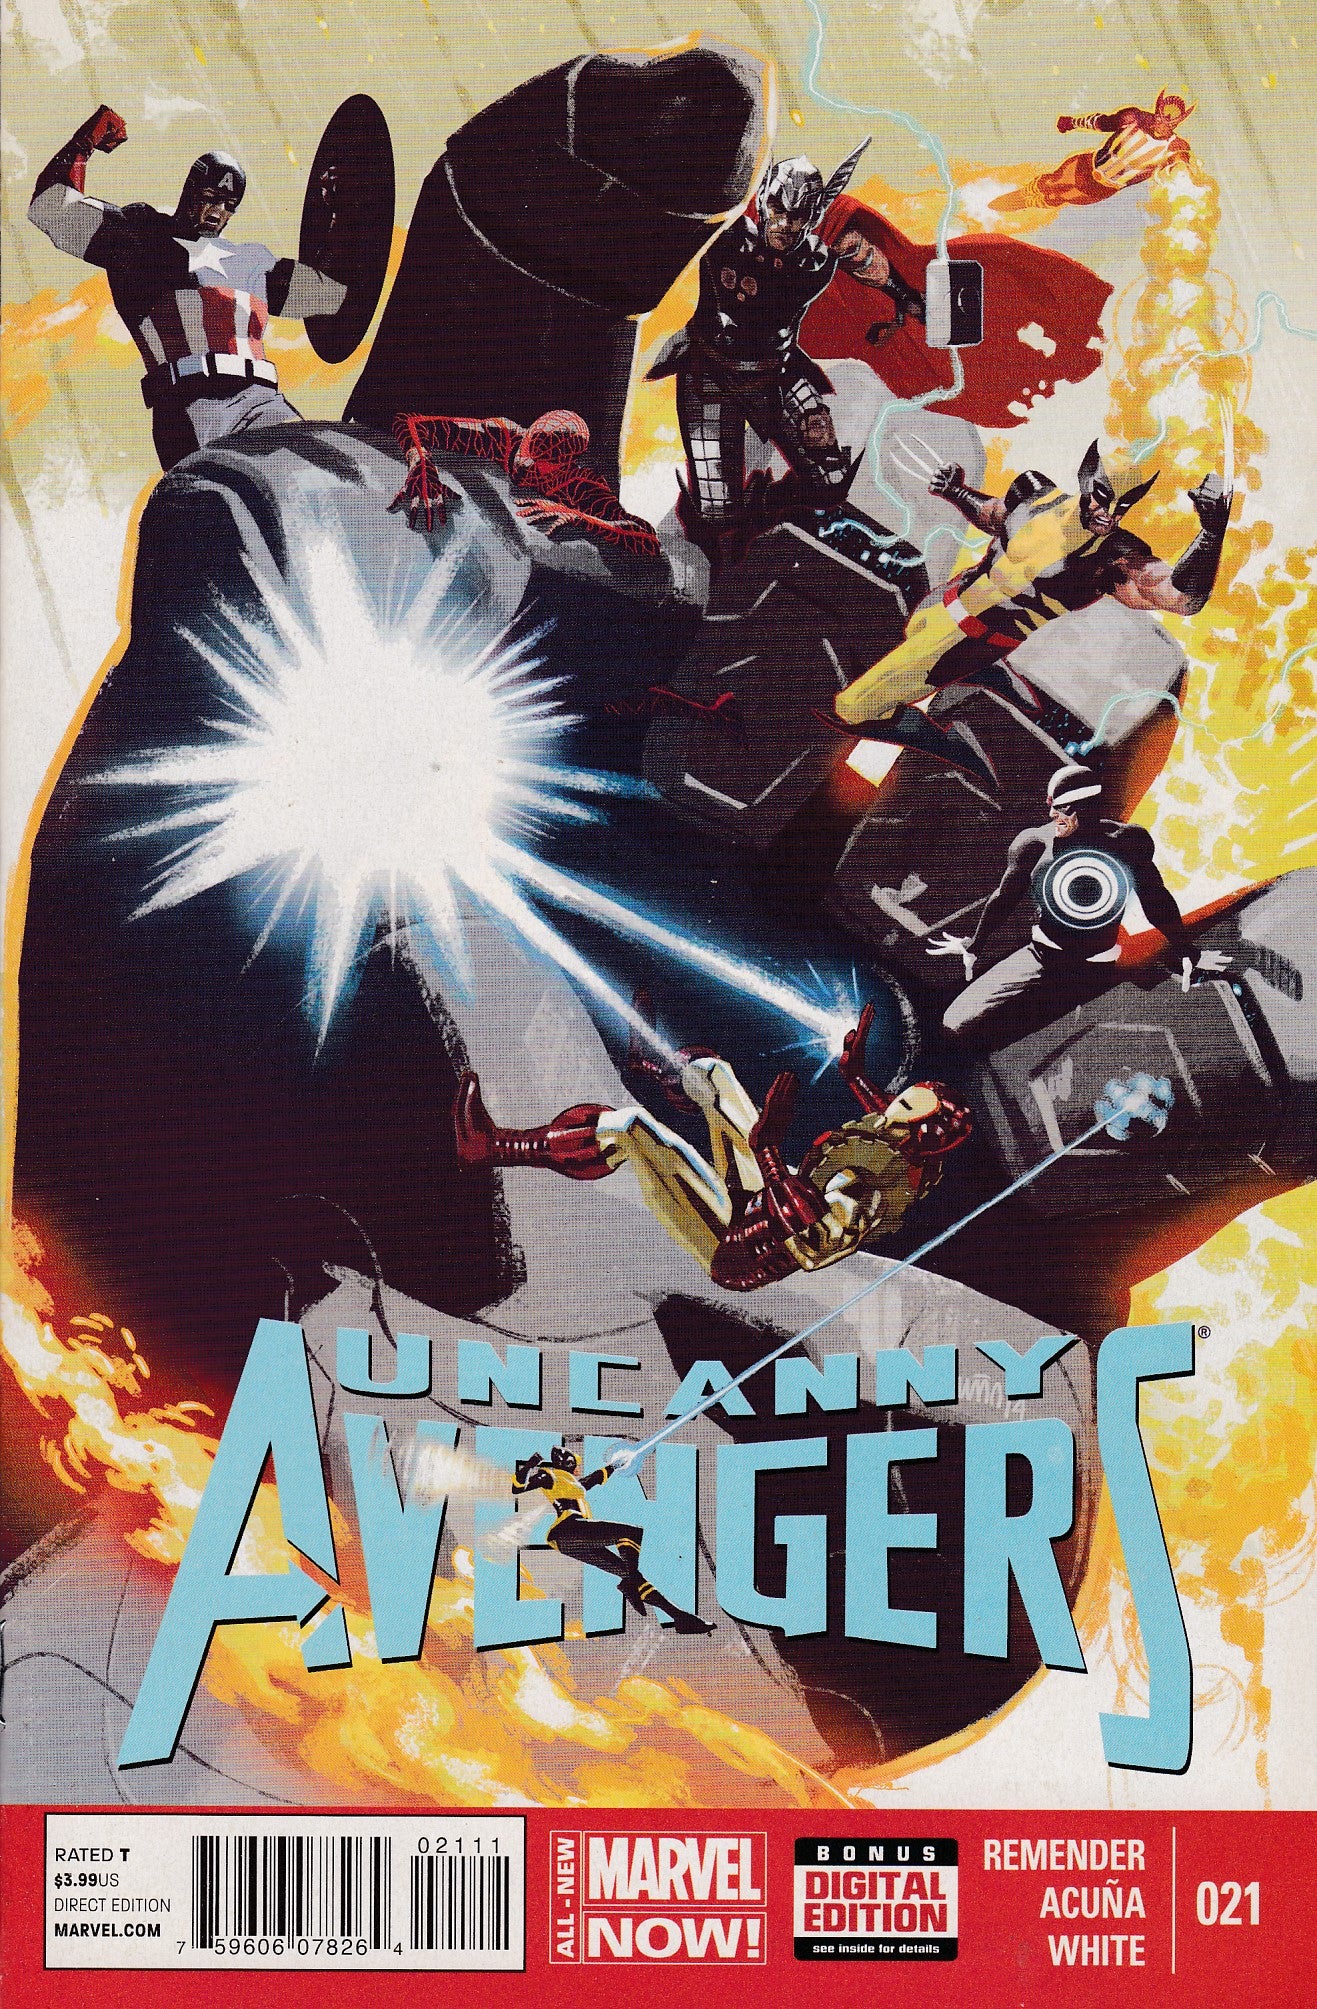 Uncanny Avengers 4: Avenge the Earth